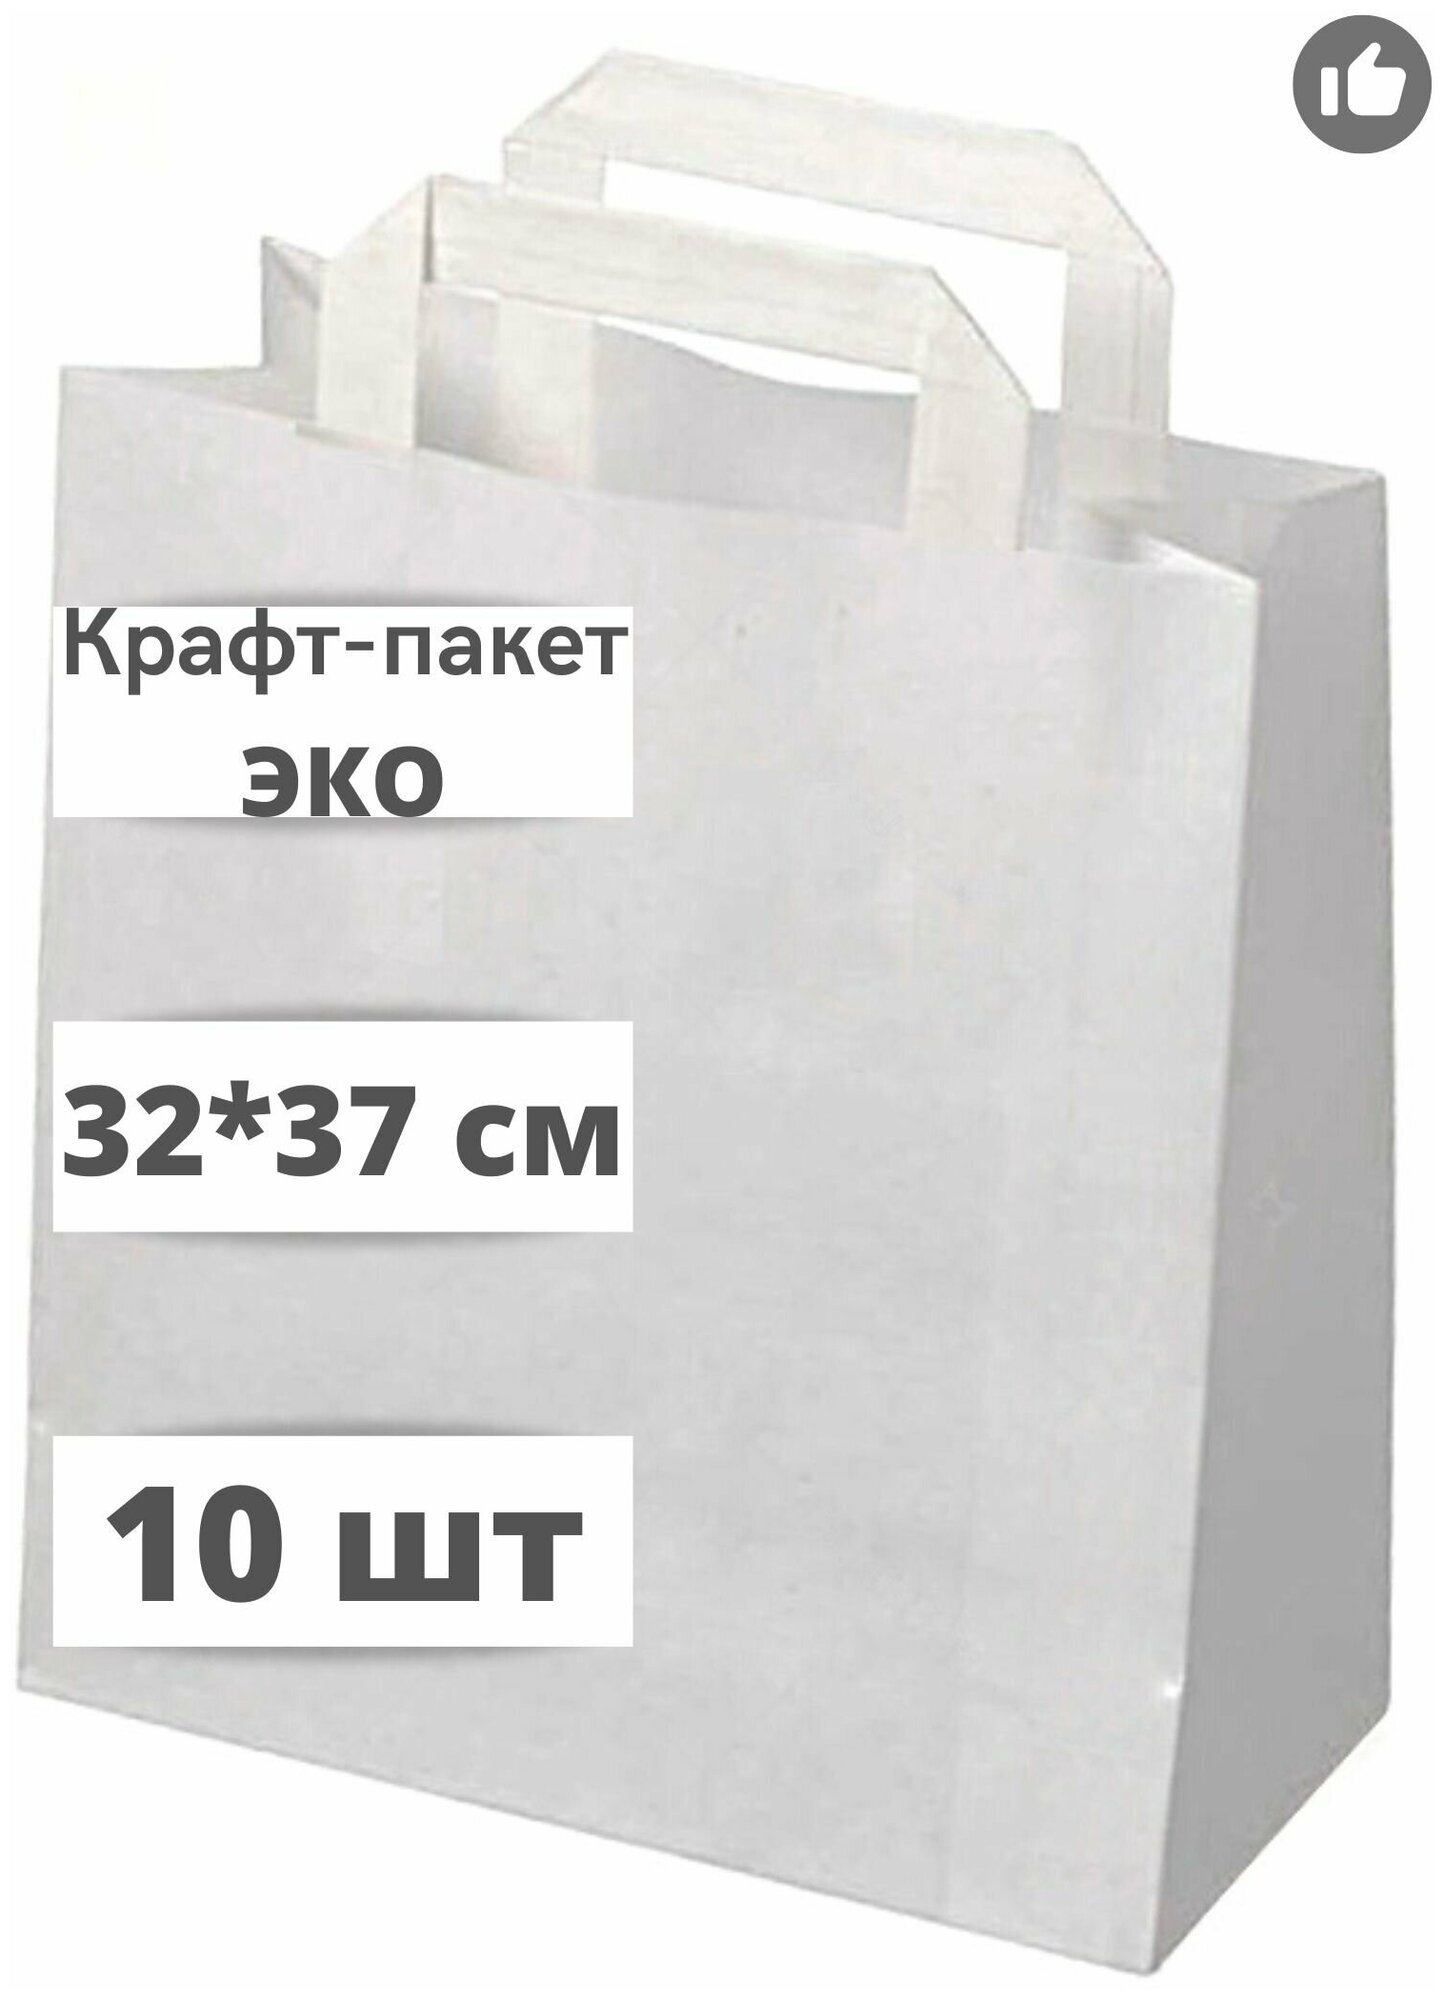 Крафт пакет бумажный с плоскими ручками, 32*37 см (глубина 18 см), 10 штук, белый.